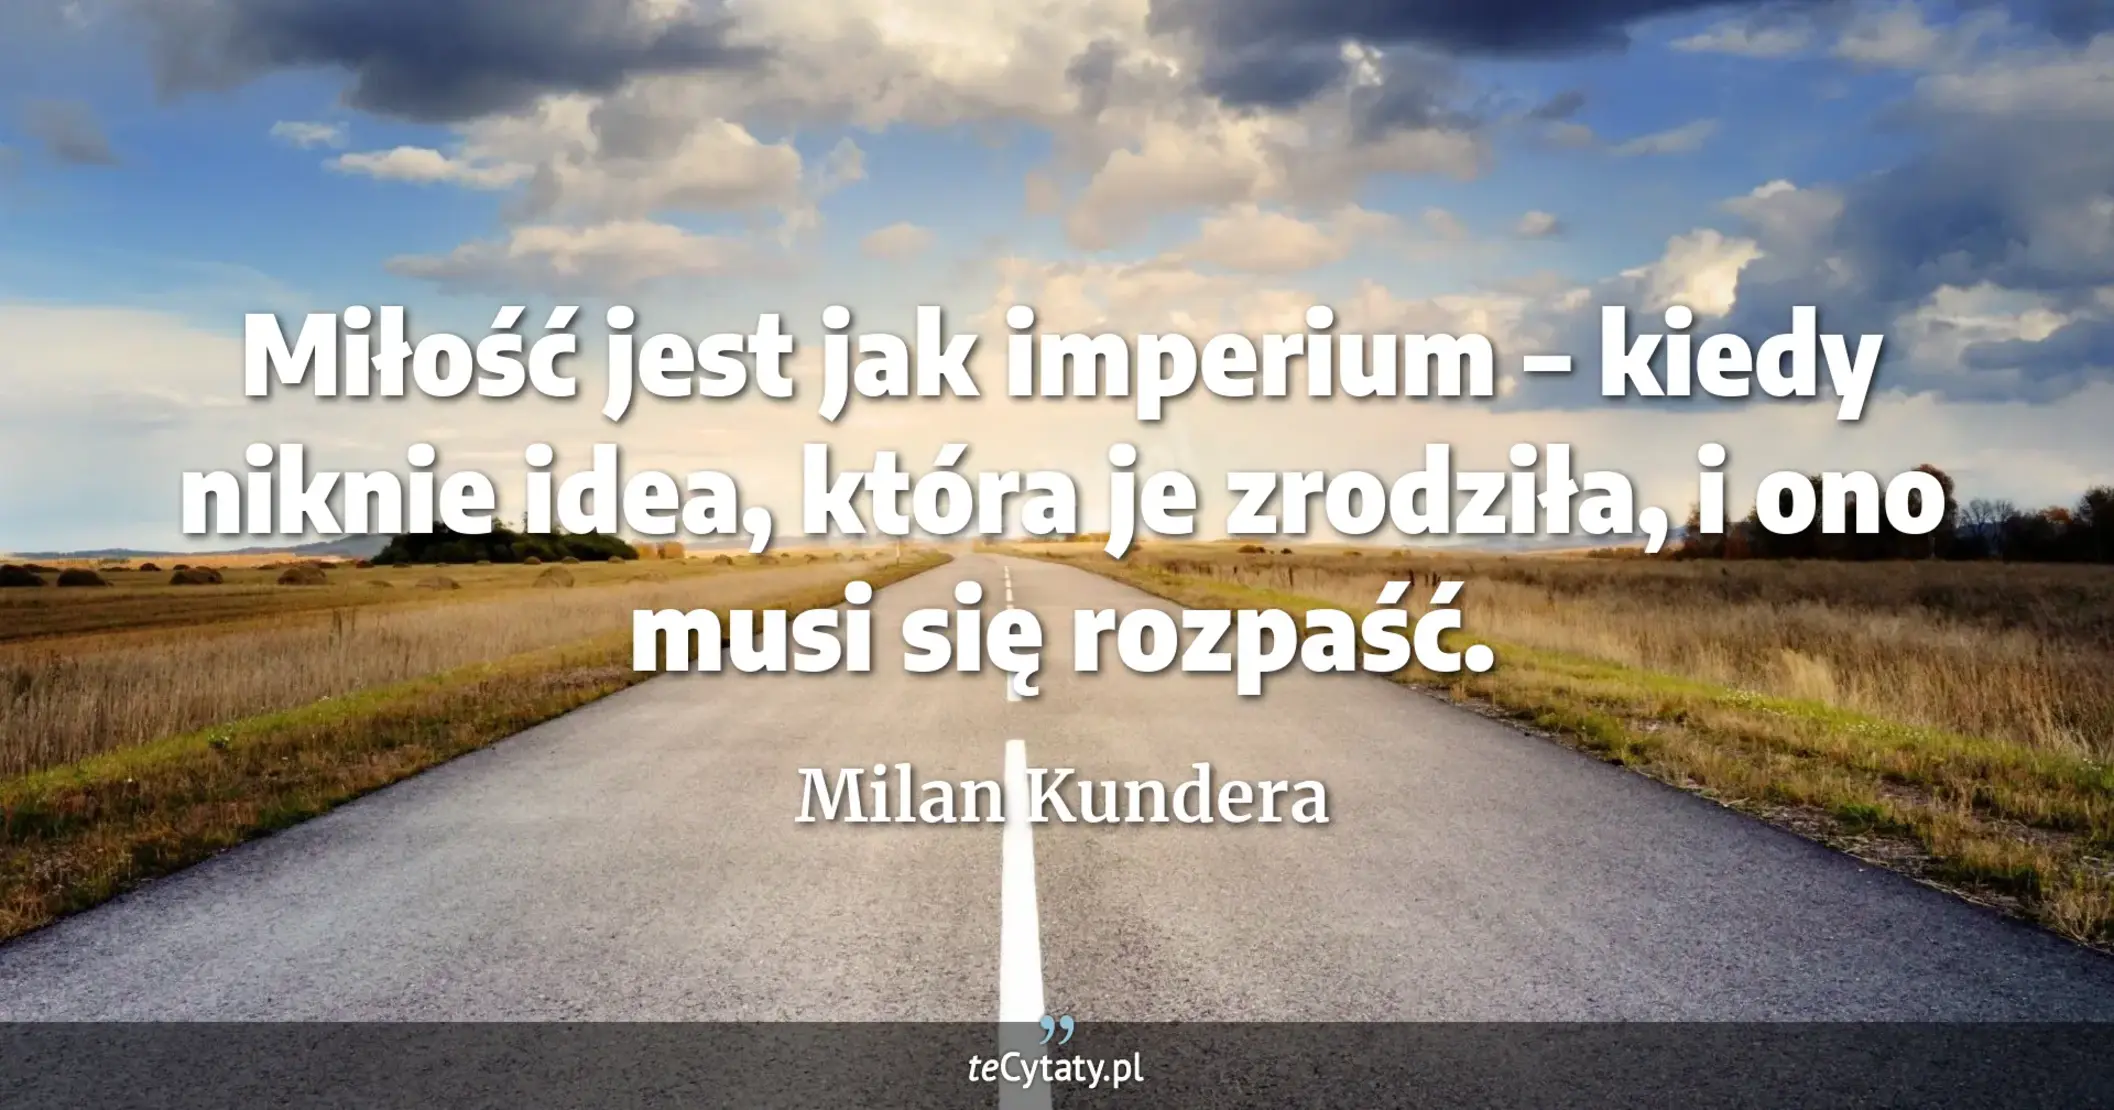 Miłość jest jak imperium – kiedy niknie idea, która je zrodziła, i ono musi się rozpaść. - Milan Kundera